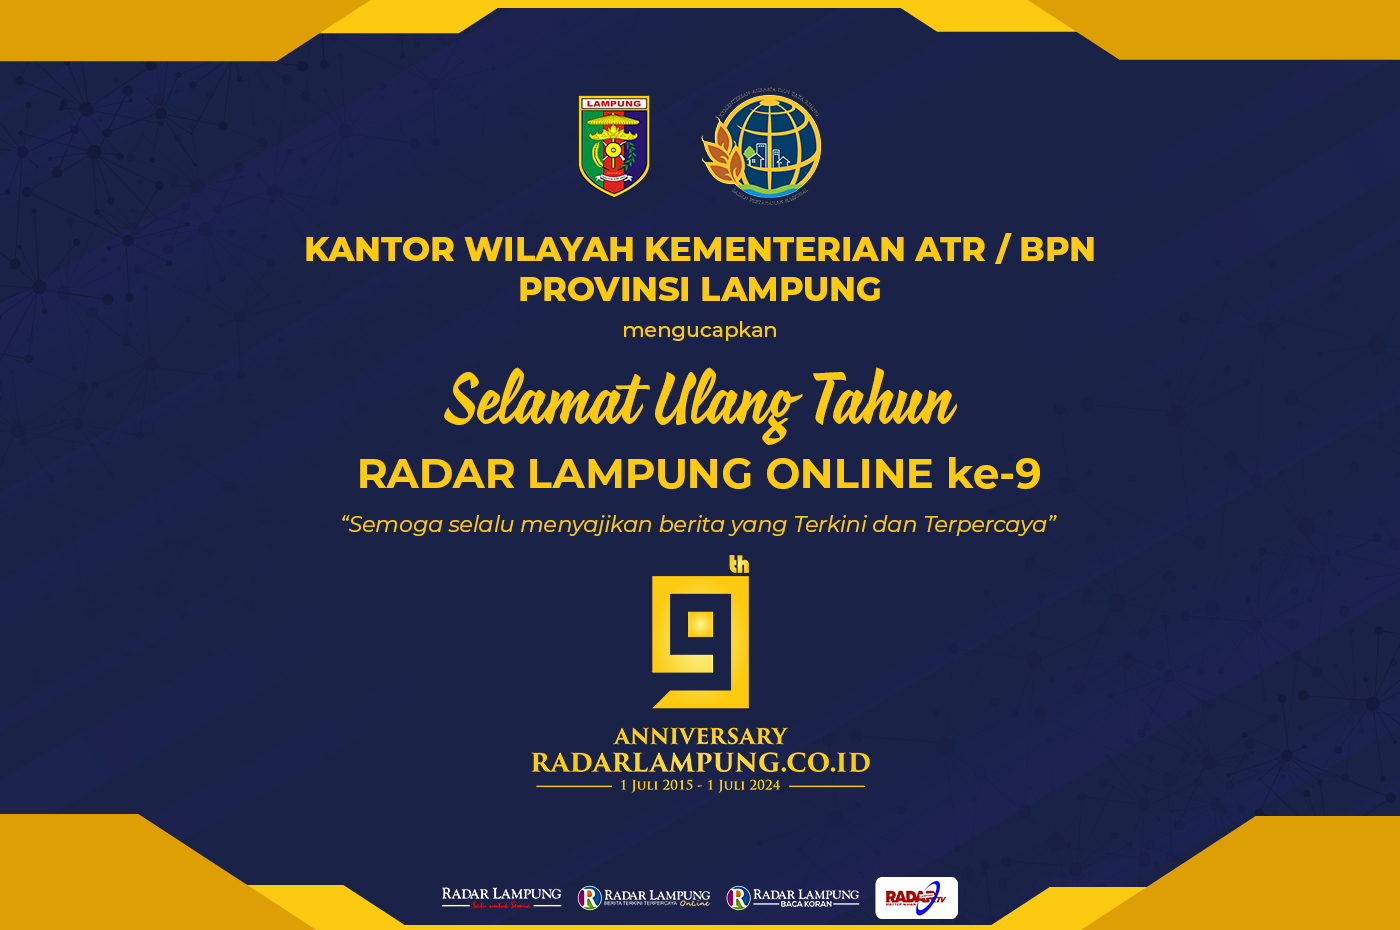 Kantor Wilayah Kementerian ATR/BPN Provinsi Lampung Mengucapkan Selamat Ulang Tahun ke-9 Radar Lampung Online